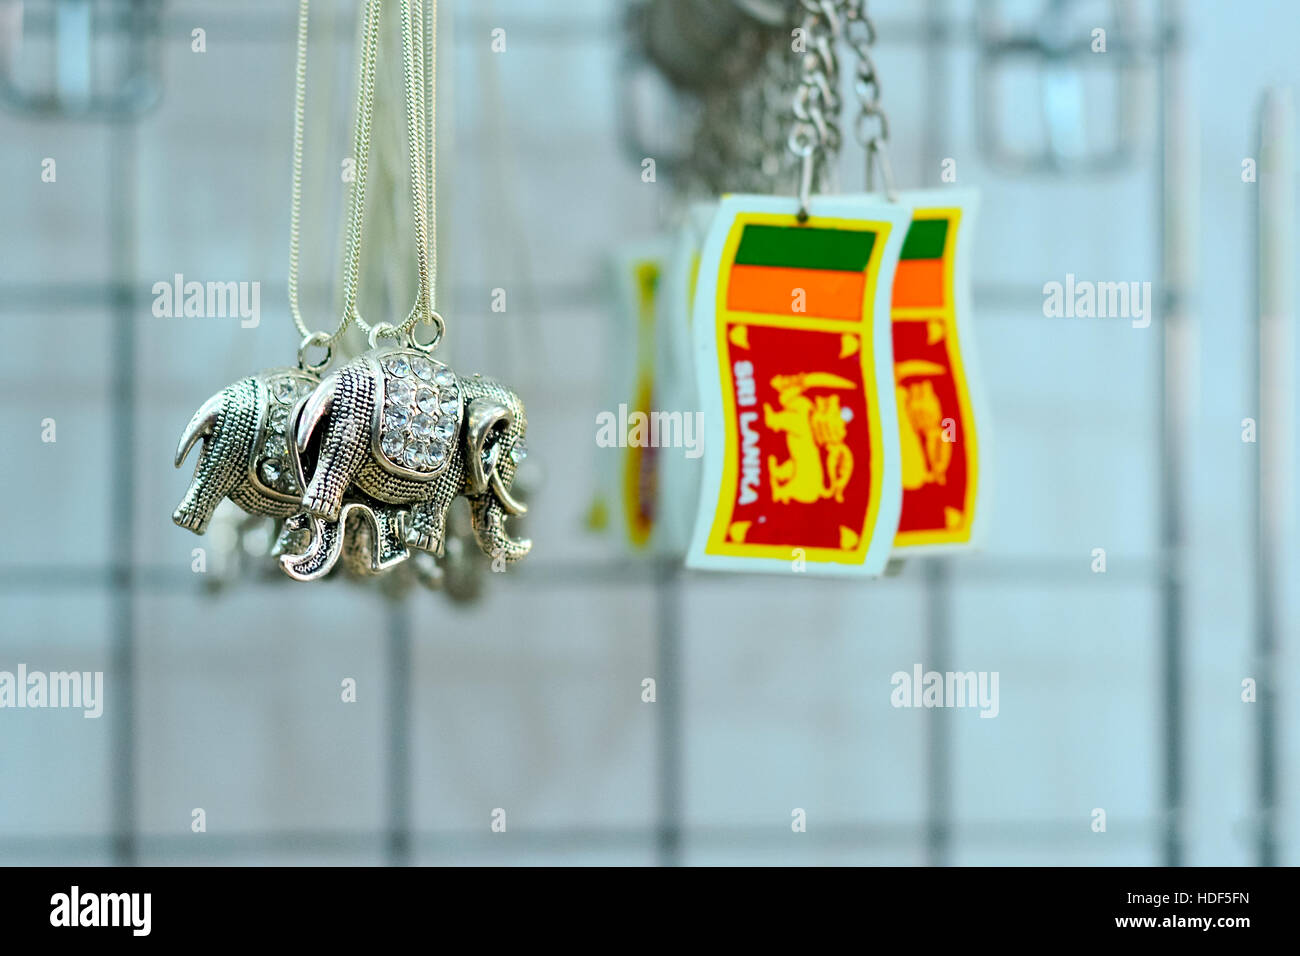 Les marchandises d'artisanat traditionnel sri-lankais cadeaux et souvenirs Banque D'Images